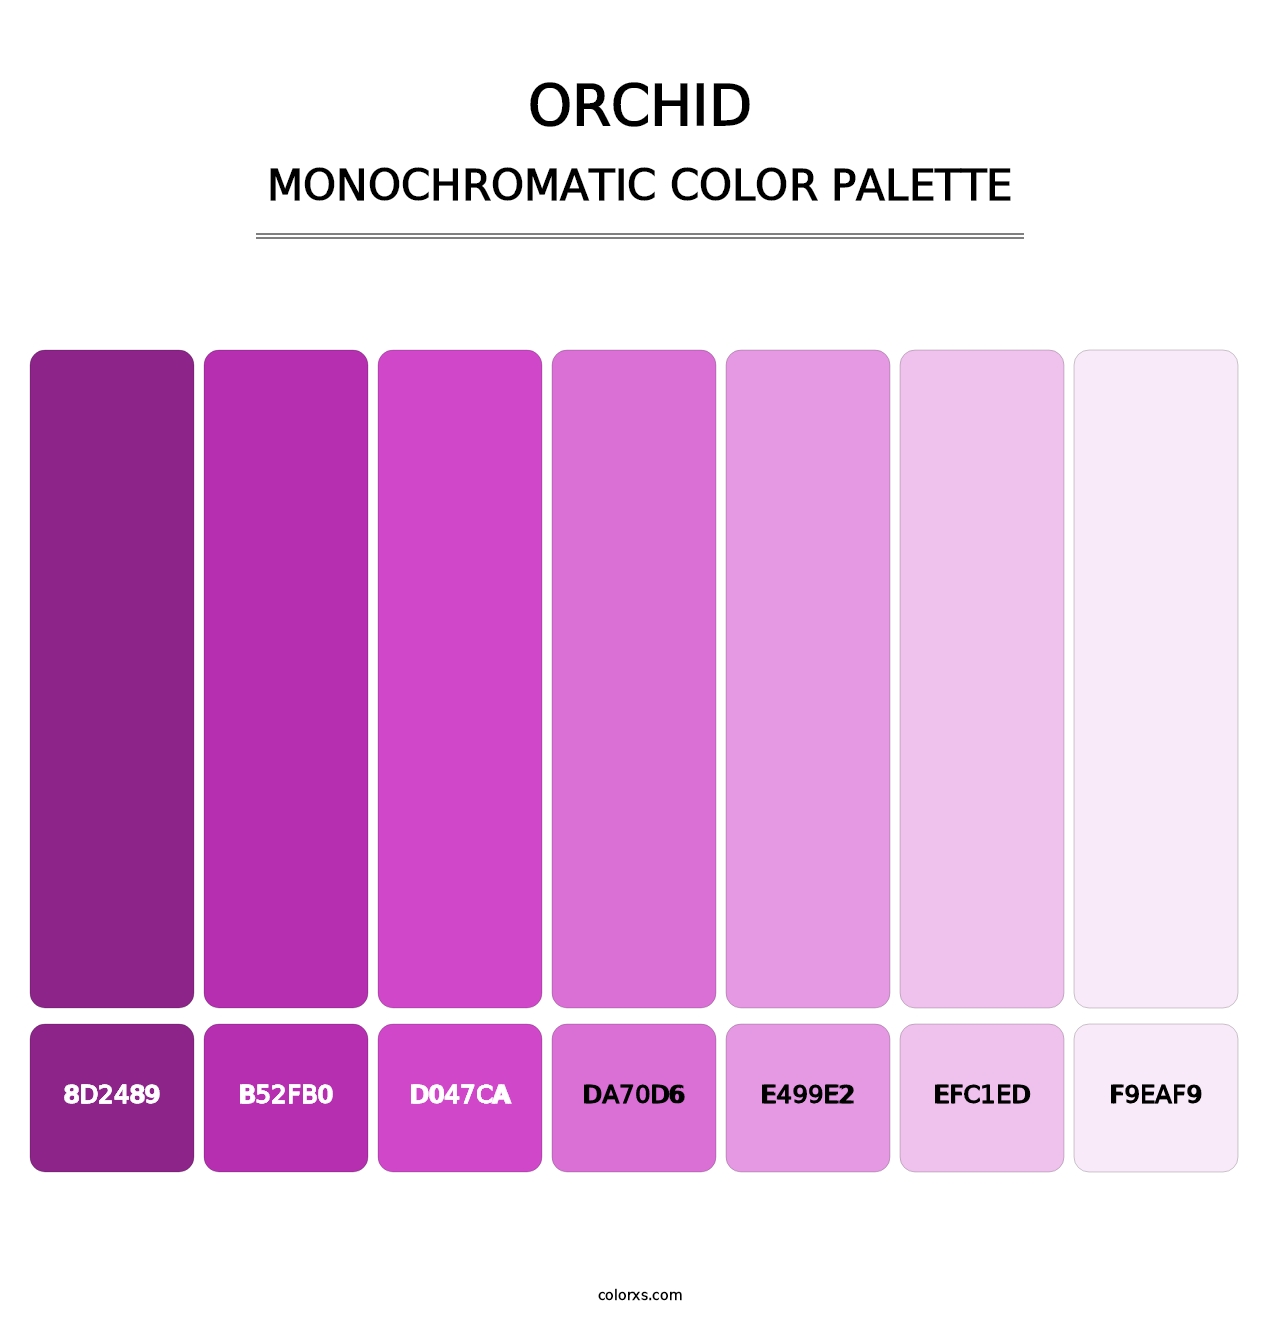 Orchid - Monochromatic Color Palette